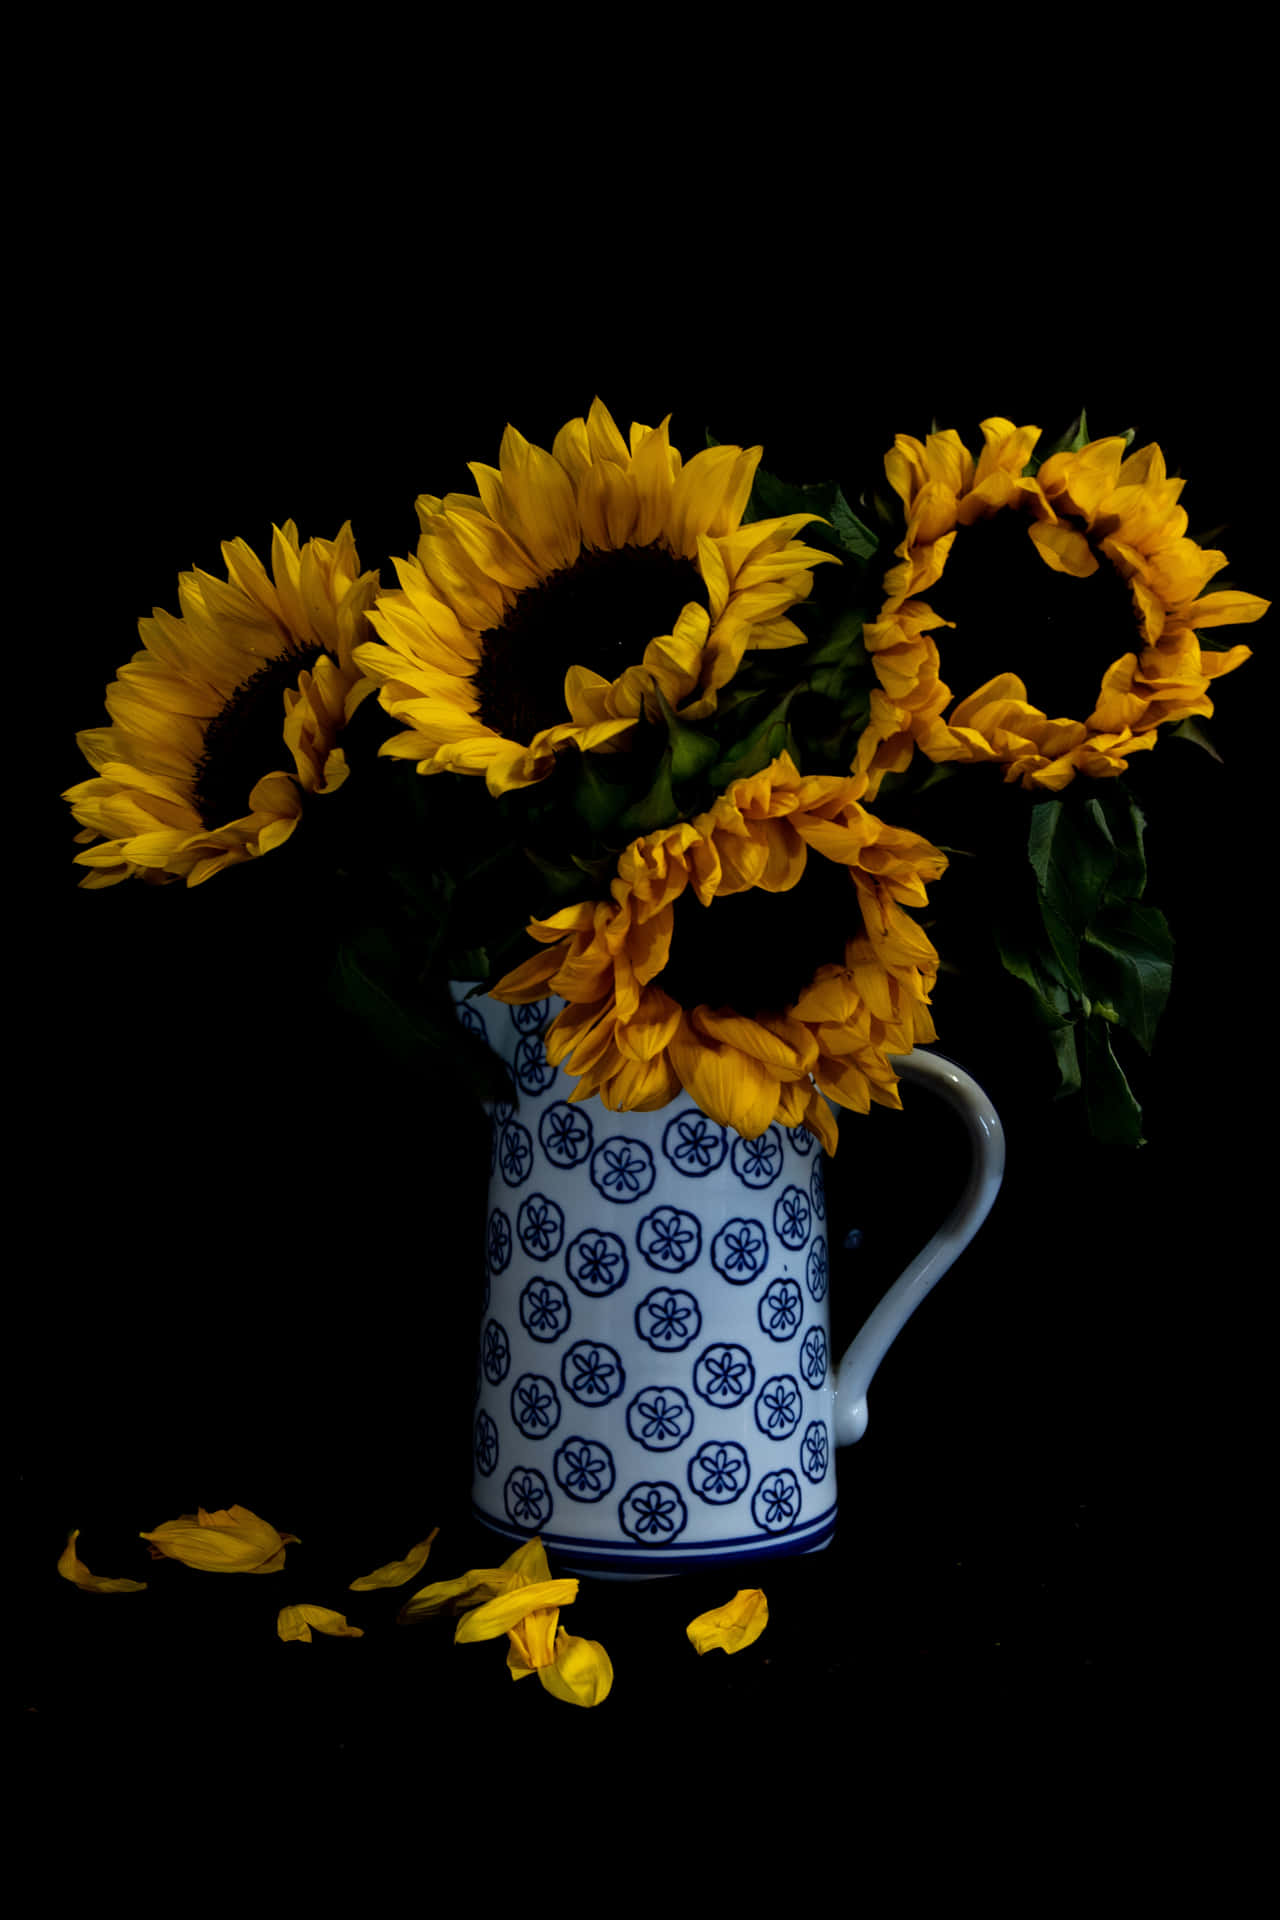 Brighten Your Day with a Dark Sunflower Wallpaper